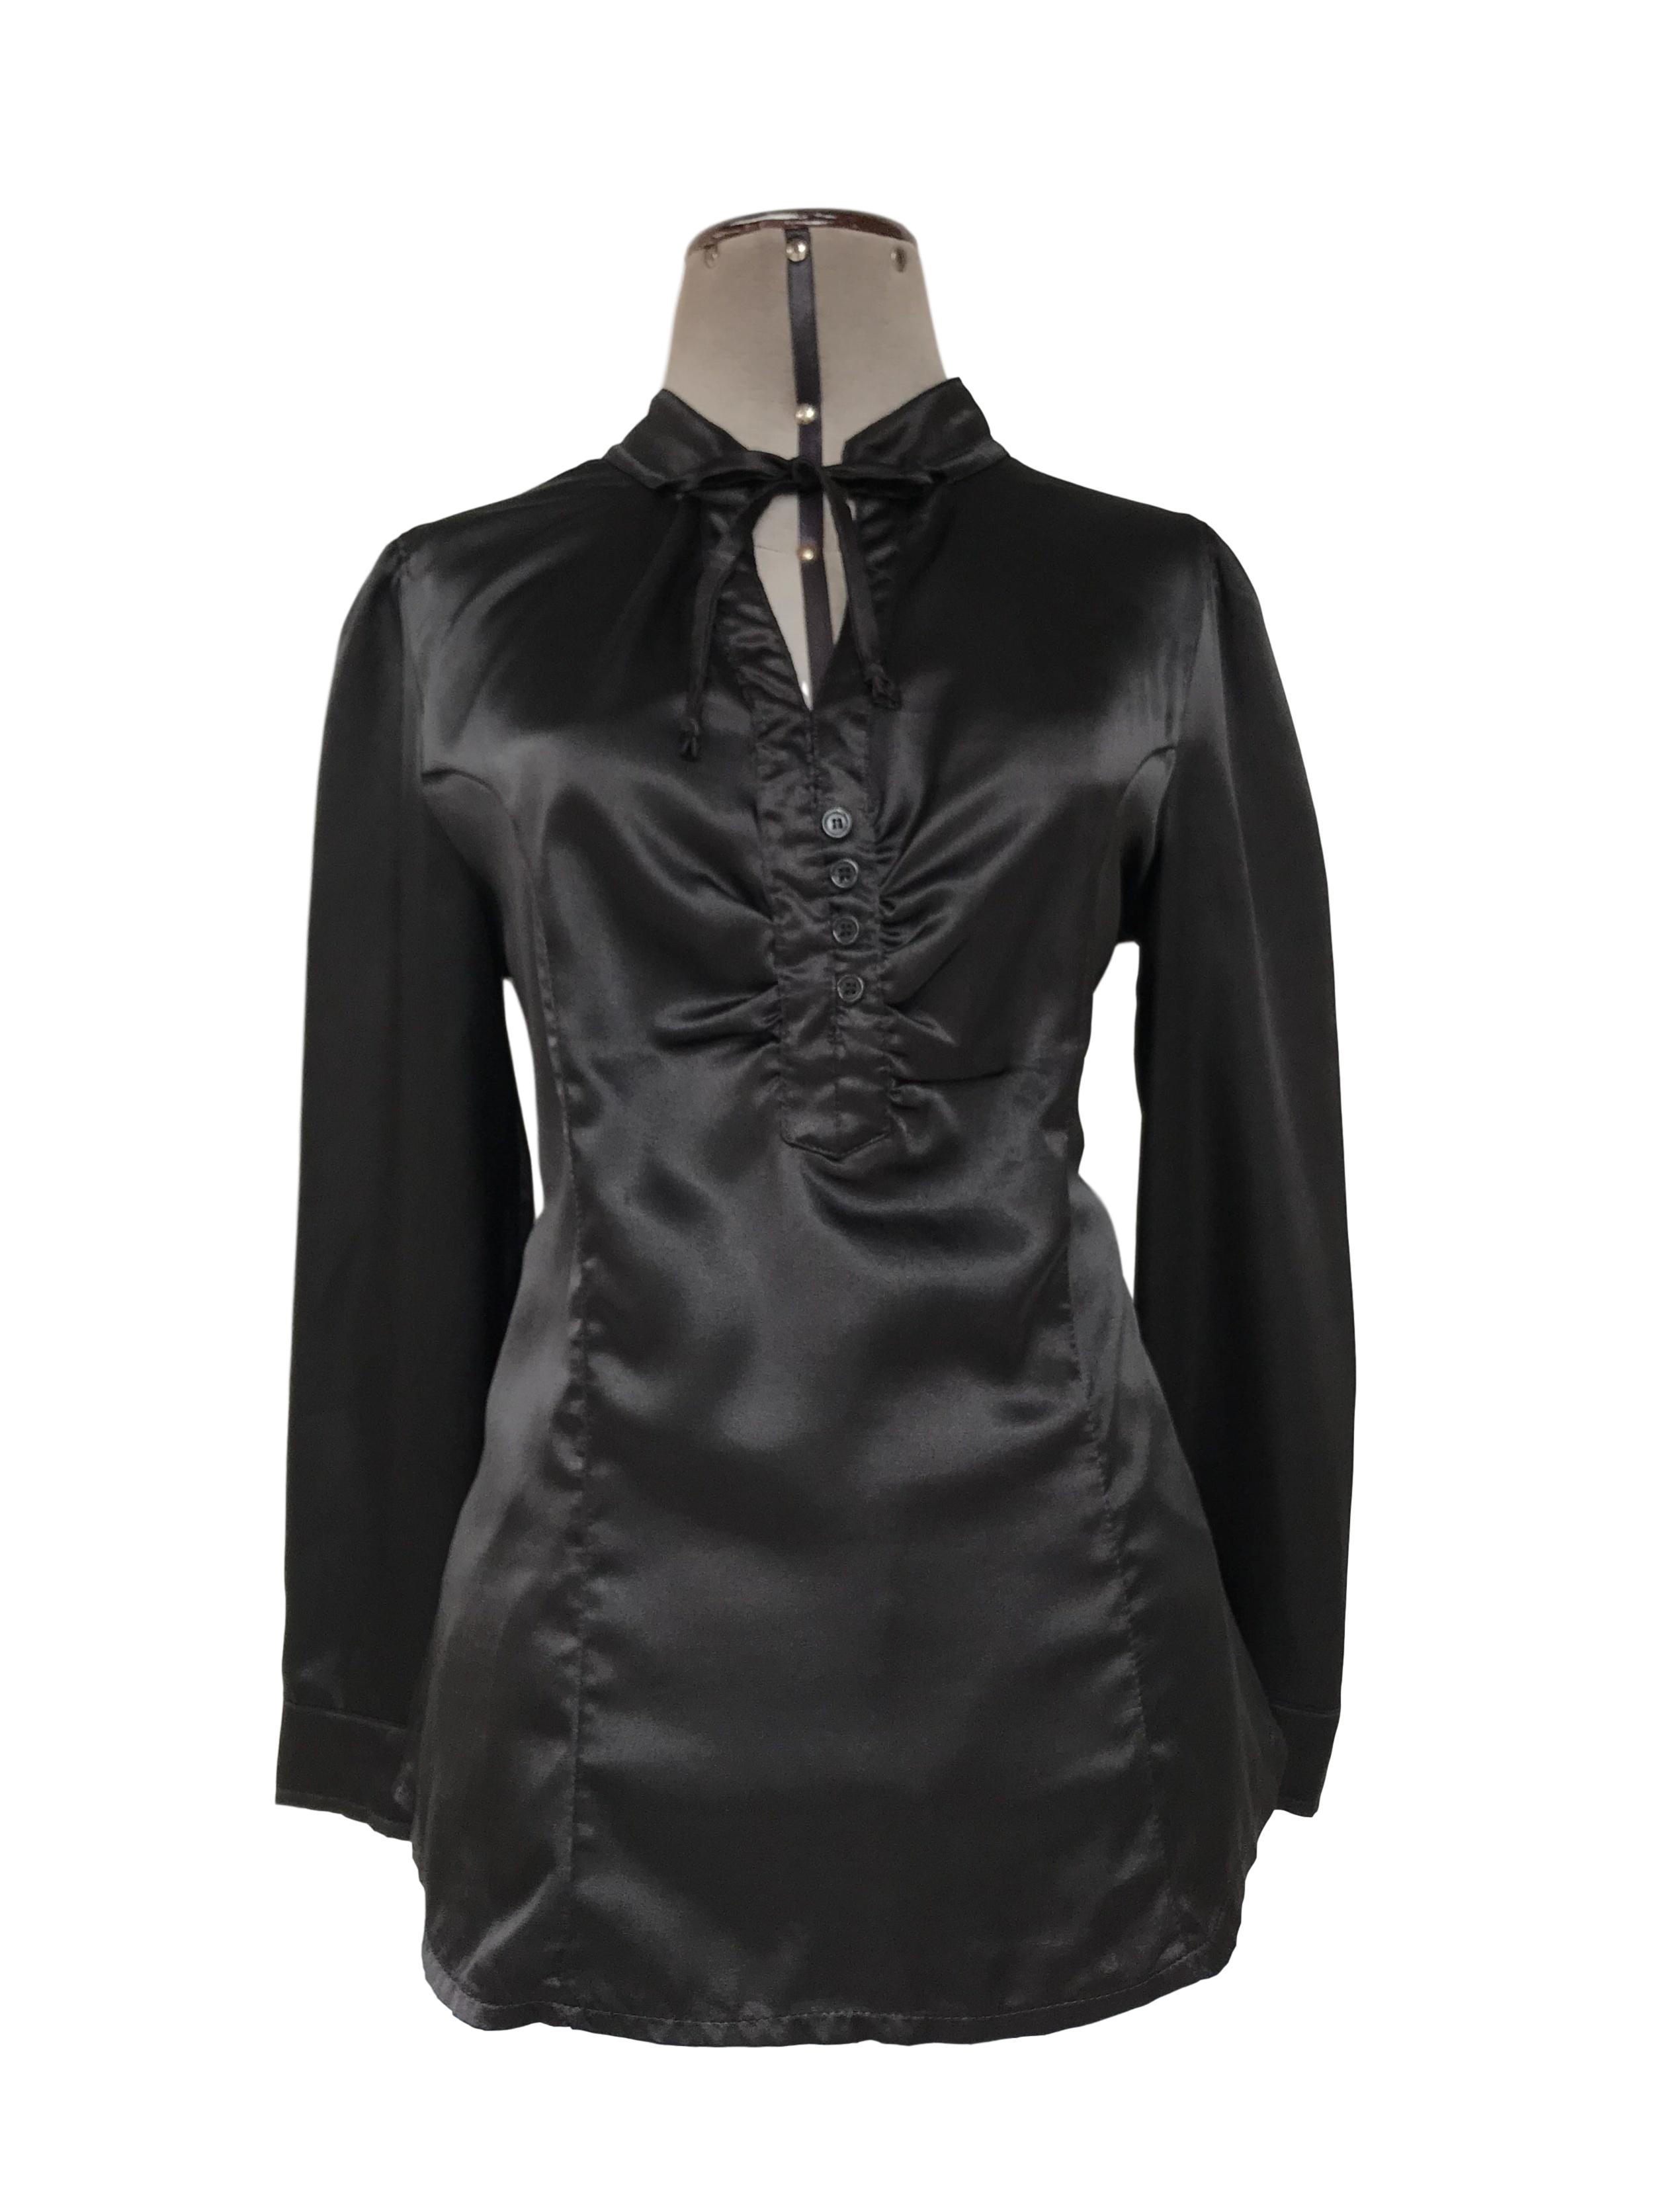 Blusa negra satinada, cuello nerú con tiras para amarrar, escote en V y botones negros, tiene pinzas delanteras y traseras
Talla M